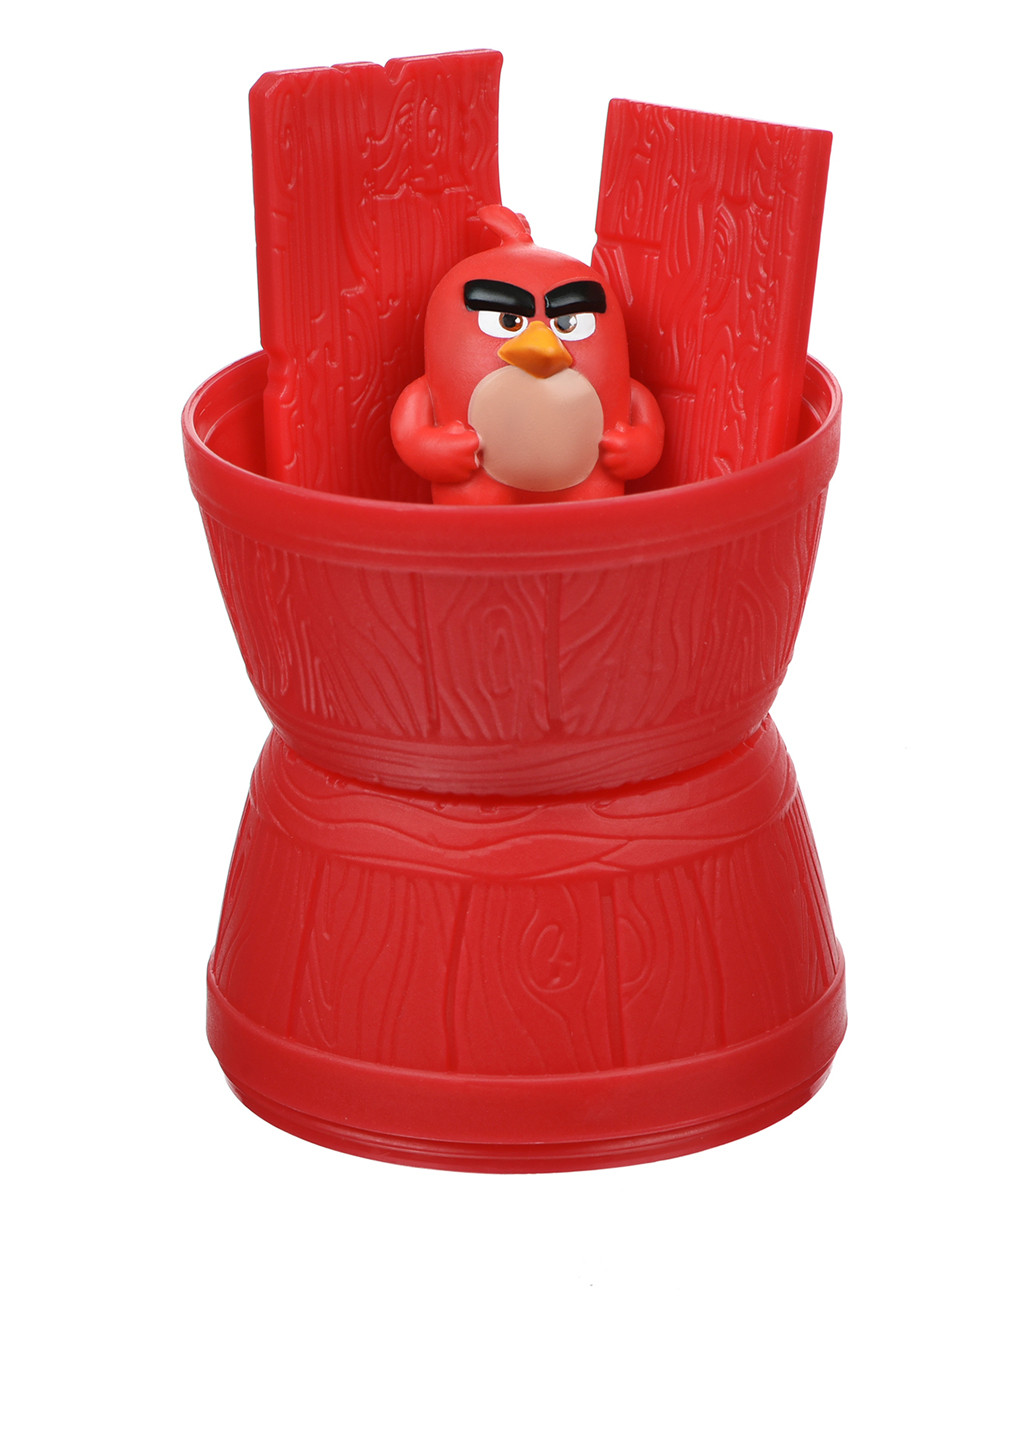 Ігрова фігурка-сюрприз в асортименті, 6х5х5 см Angry Birds комбінована